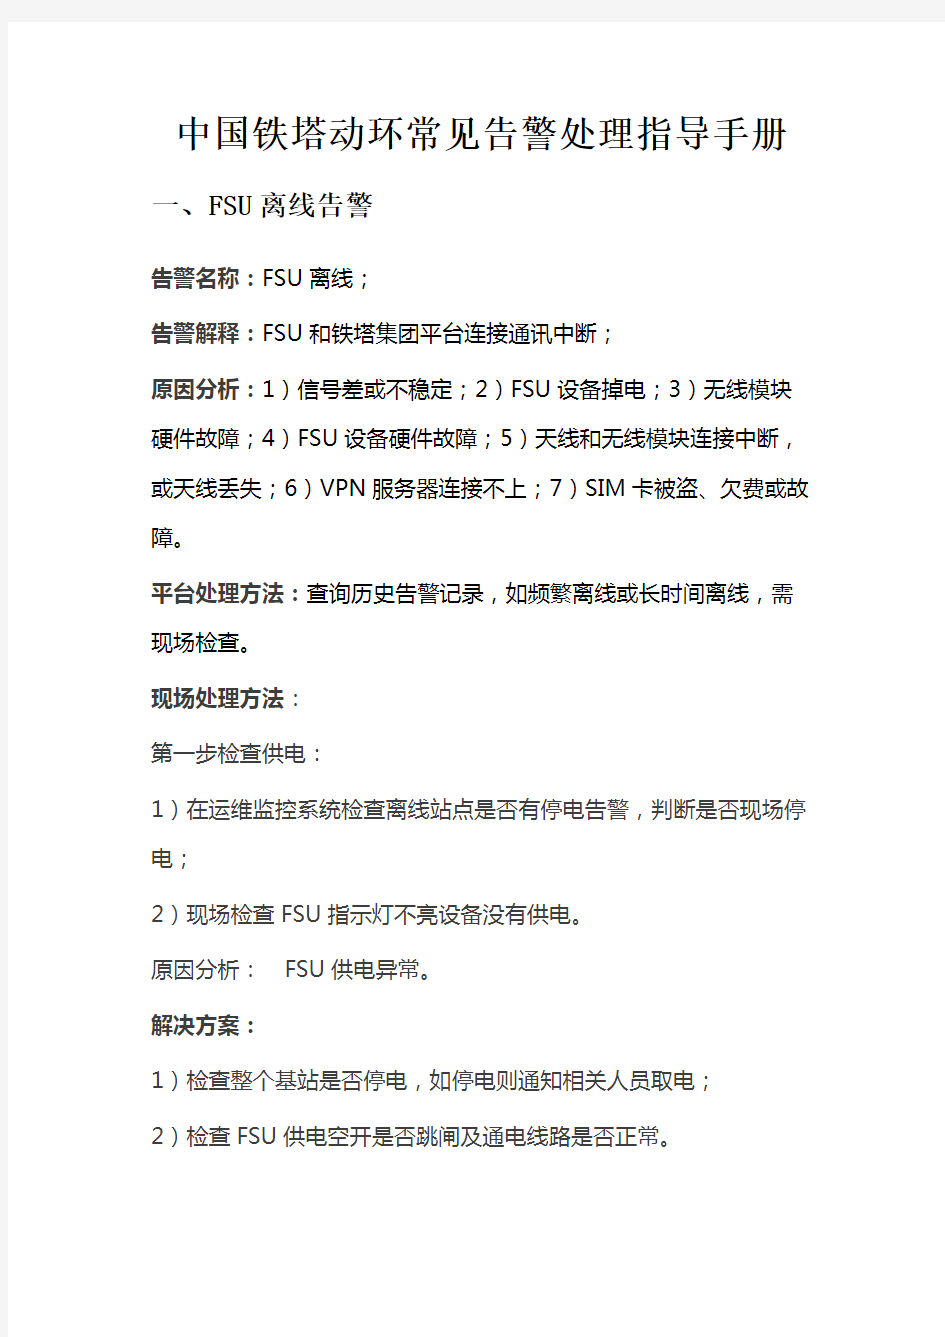 中国铁塔动环常见告警处理指导手册教学文稿